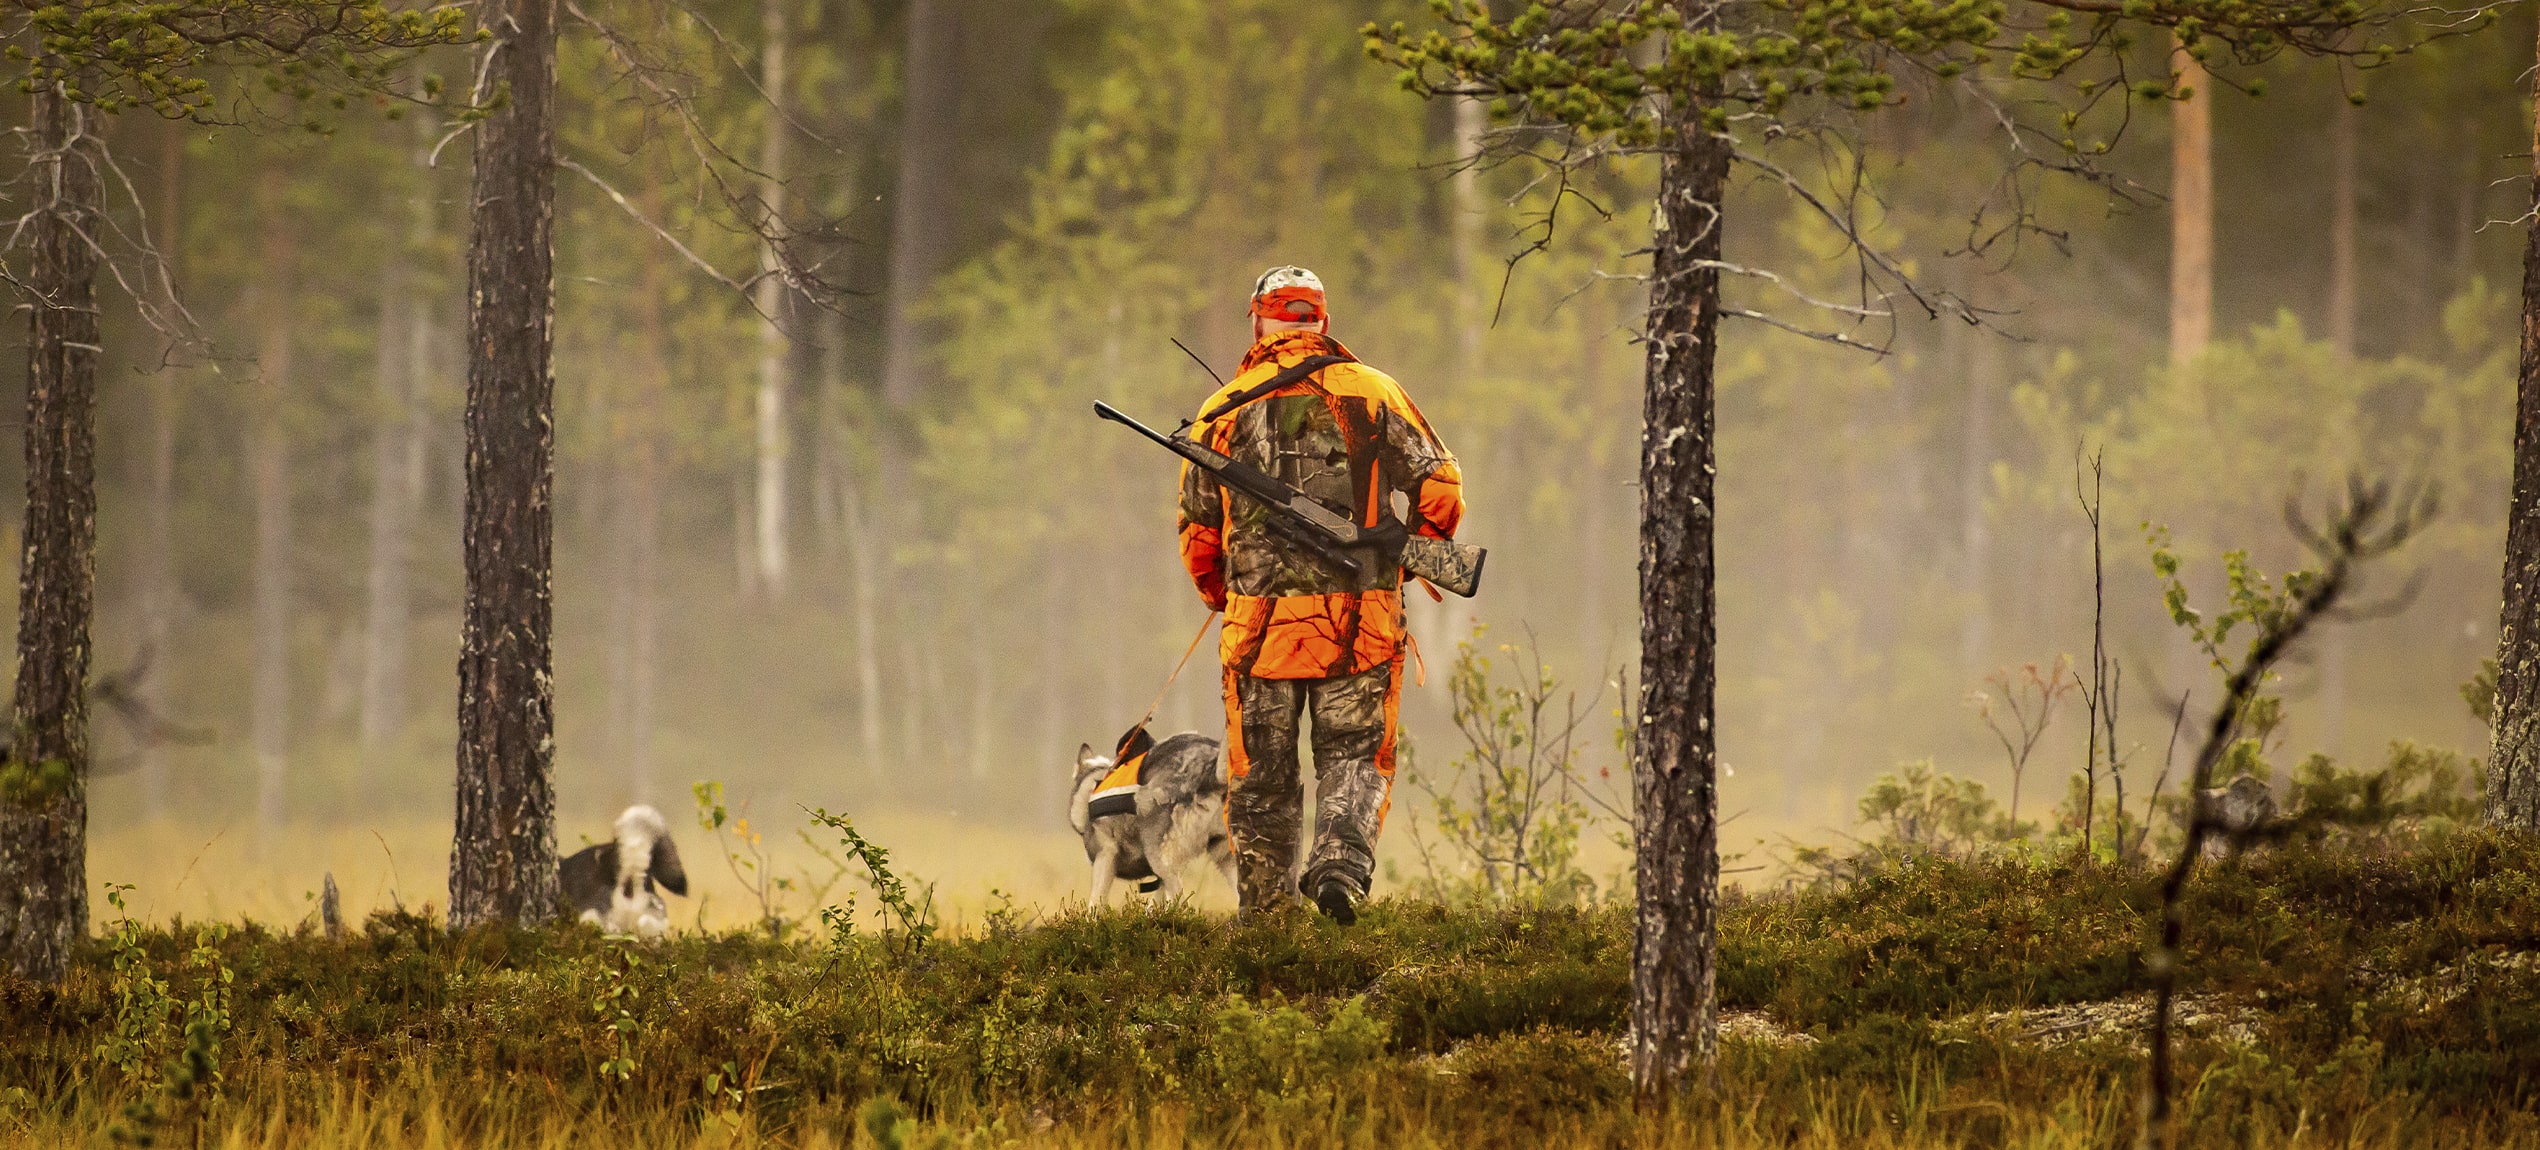 Avbildet: Jeger går med to hunder på jakt